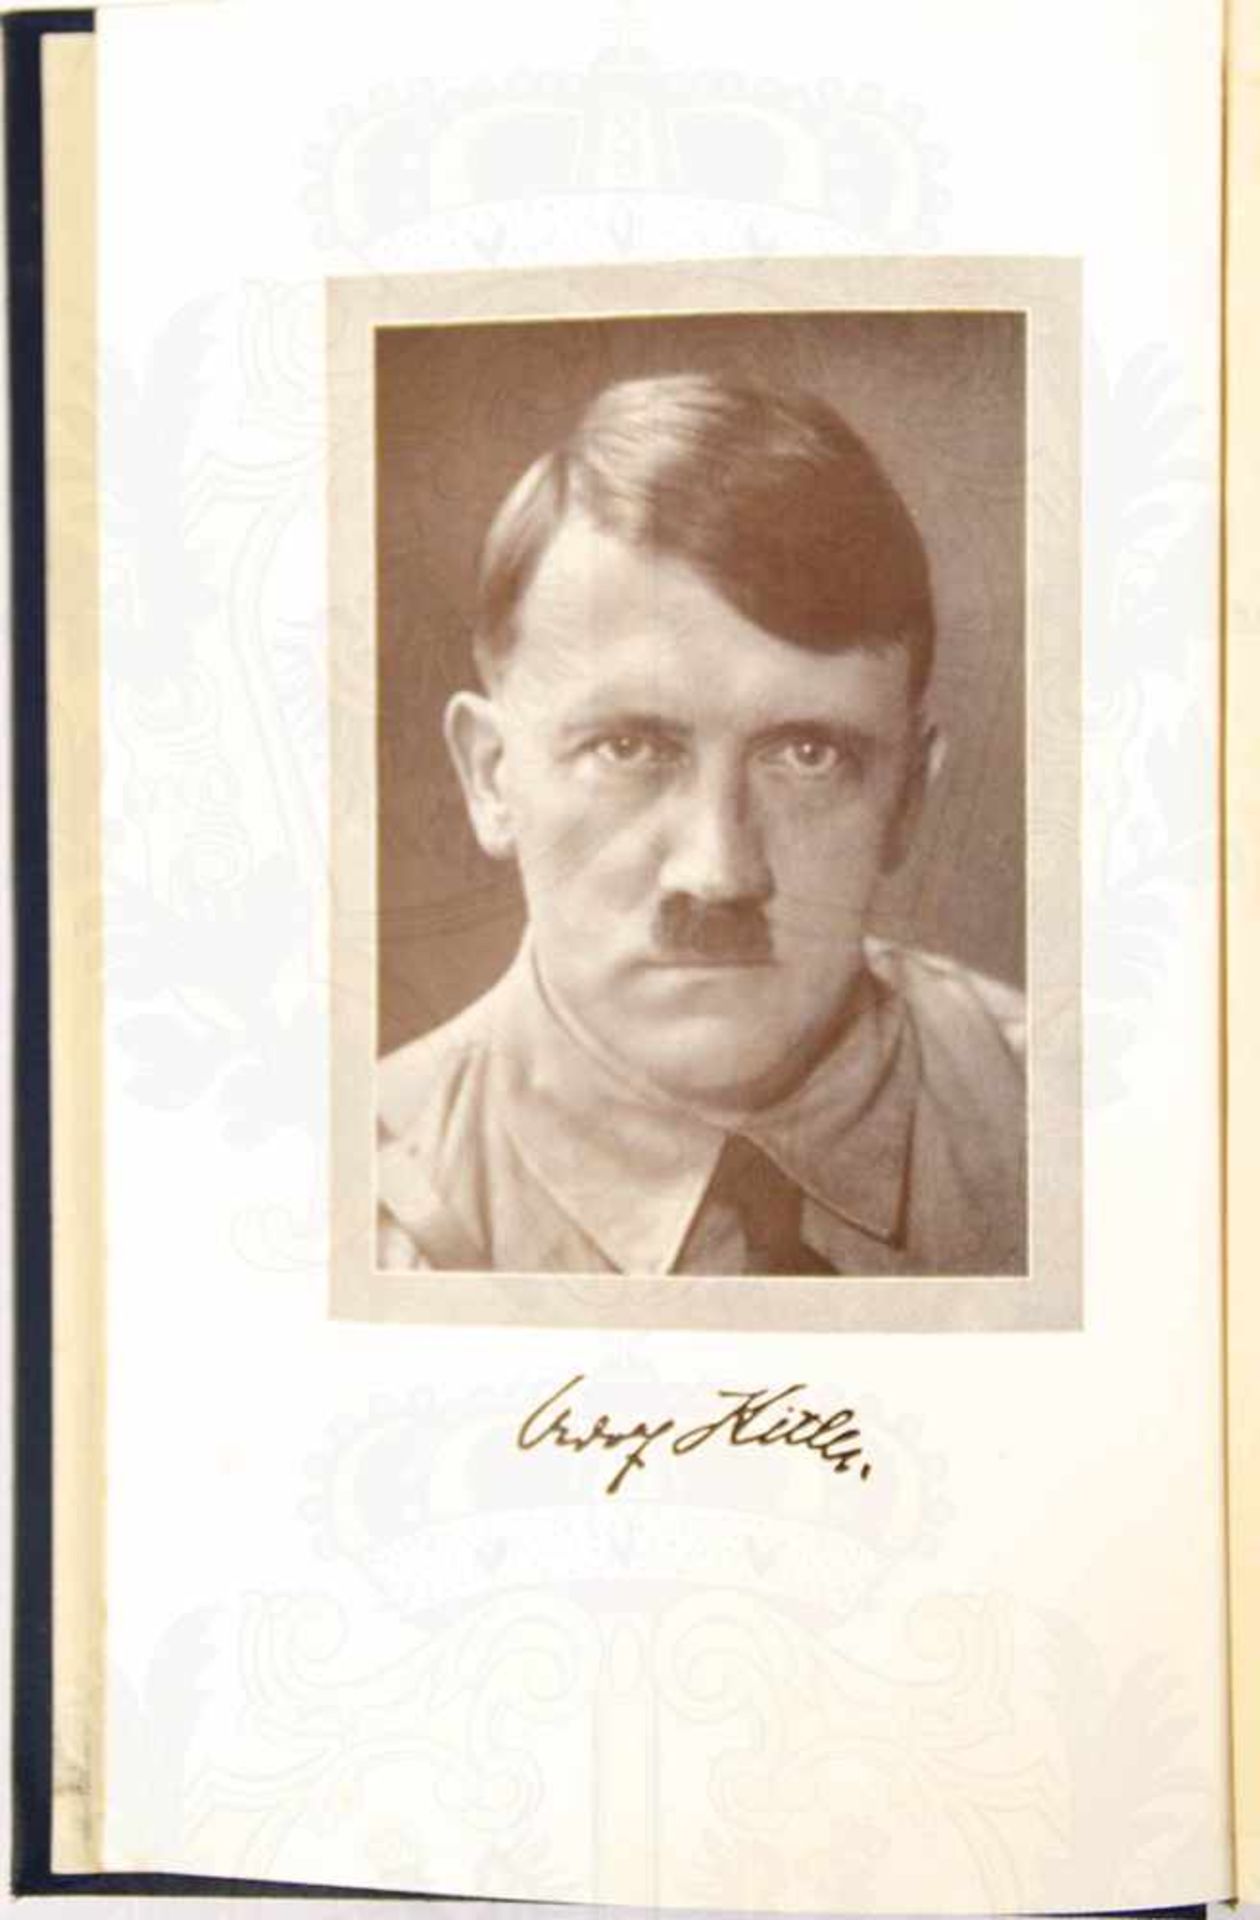 MEIN KAMPF, Adolf Hitler, Volksausgabe, Eher Verlag, 1938, 781 S., Porträtbild, blaues goldgepr. - Bild 2 aus 3